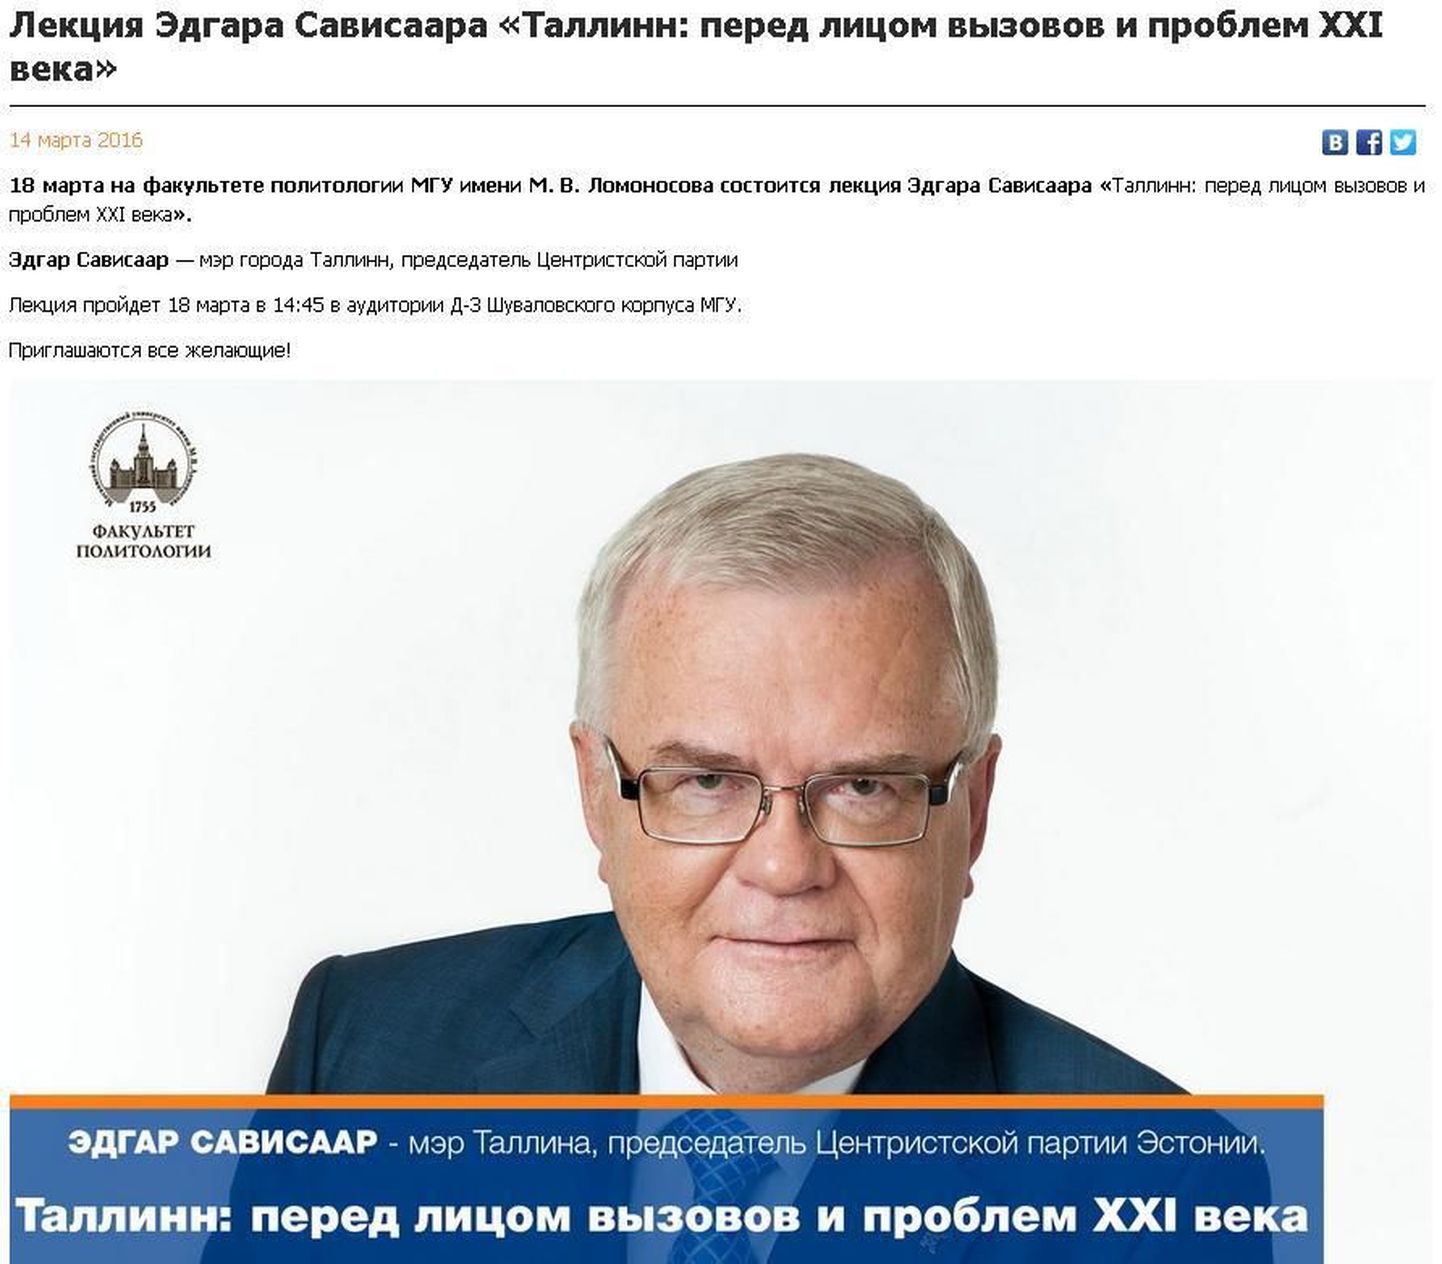 Эдгар Сависаар выступит в Москве в качестве мэра Таллинна.